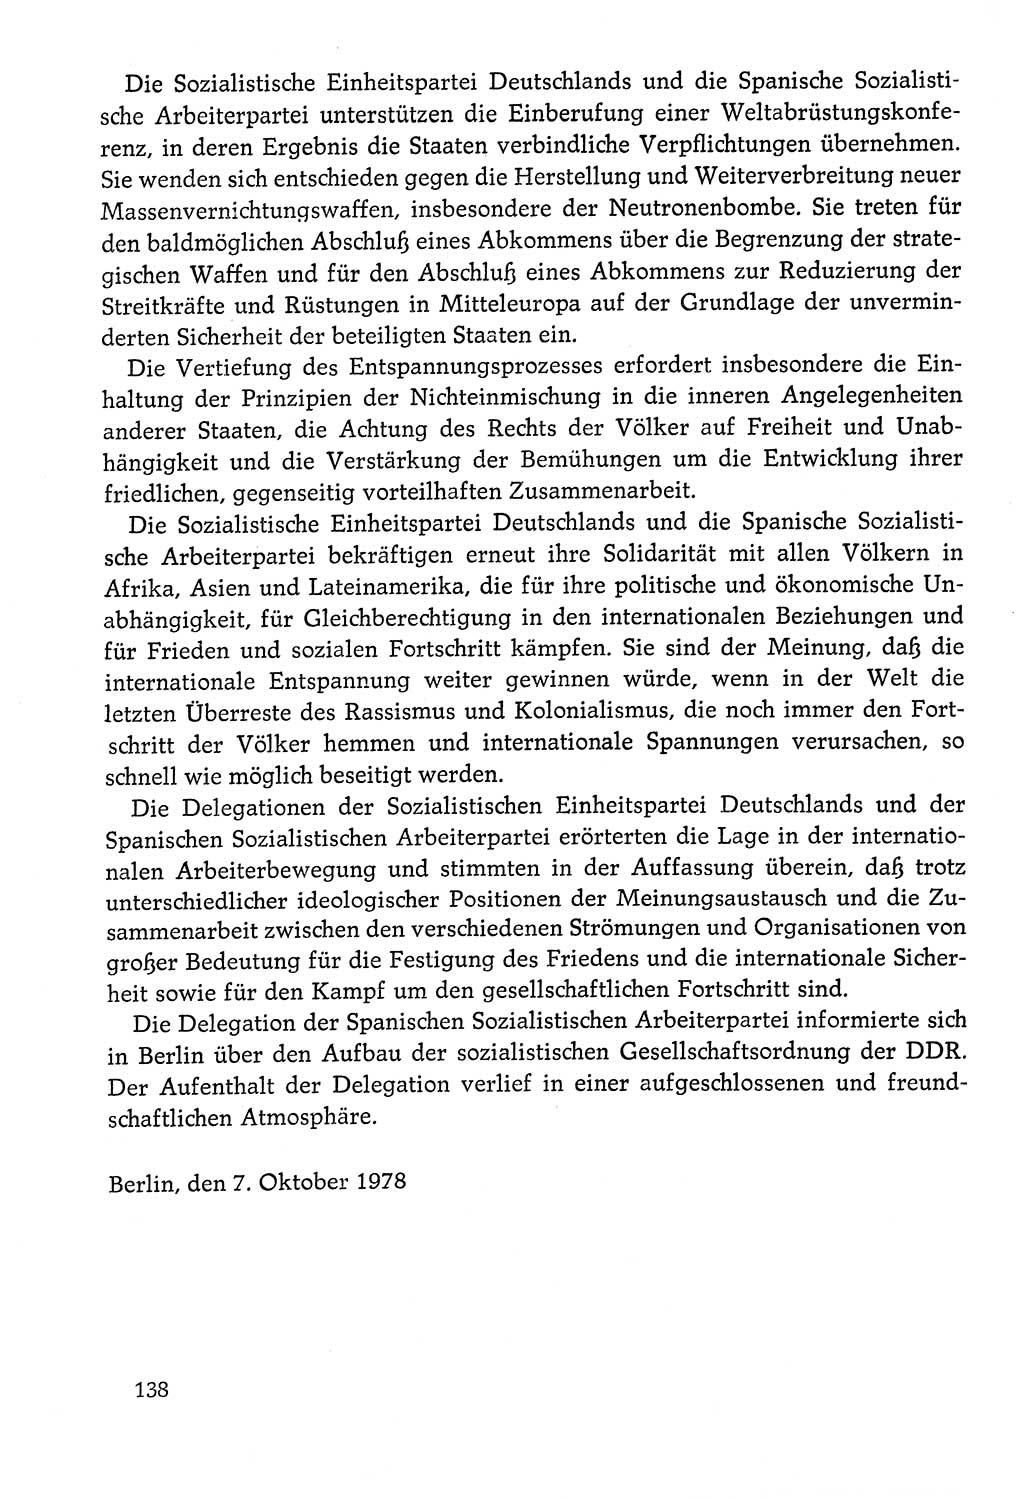 Dokumente der Sozialistischen Einheitspartei Deutschlands (SED) [Deutsche Demokratische Republik (DDR)] 1978-1979, Seite 138 (Dok. SED DDR 1978-1979, S. 138)